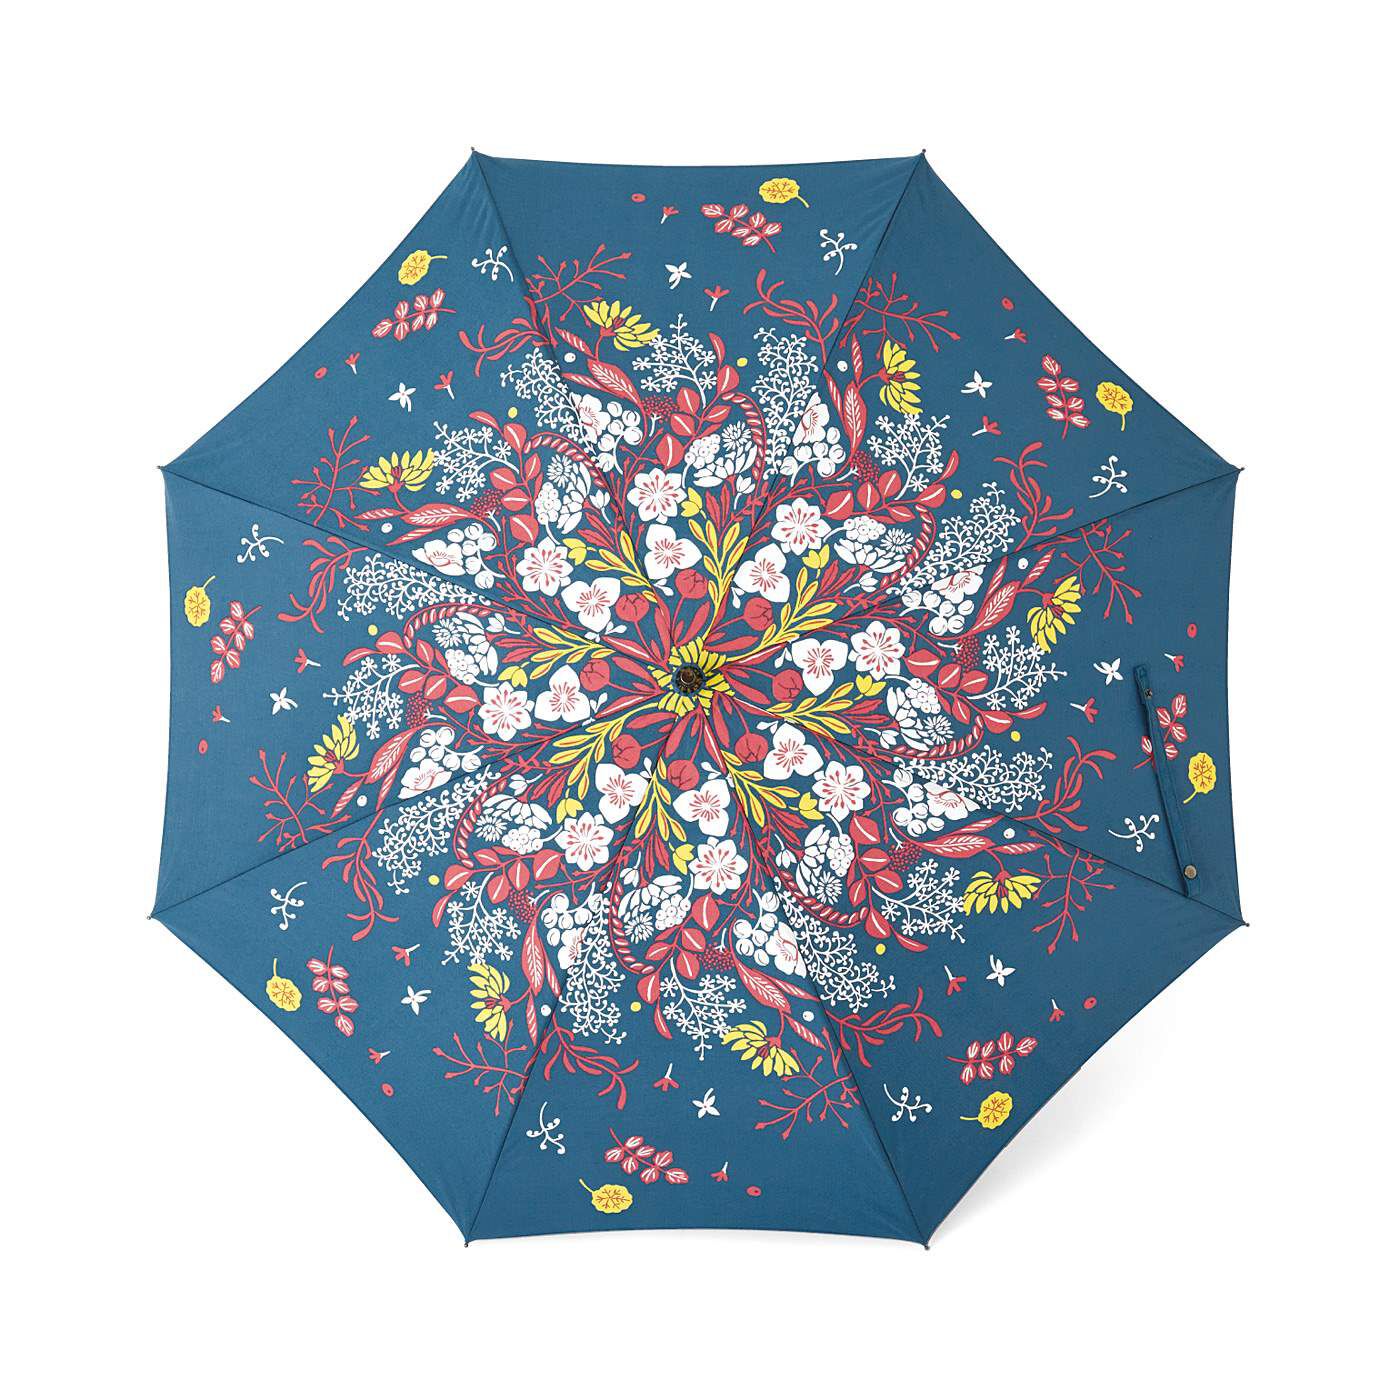 Real Stock|el:ment×山本祐布子　お花のブーケが舞い落ちる 熟練の傘職人さんが作る晴雨兼用傘〈ストーンネイビー〉|アンティークリネンのようなカラーが魅力的。